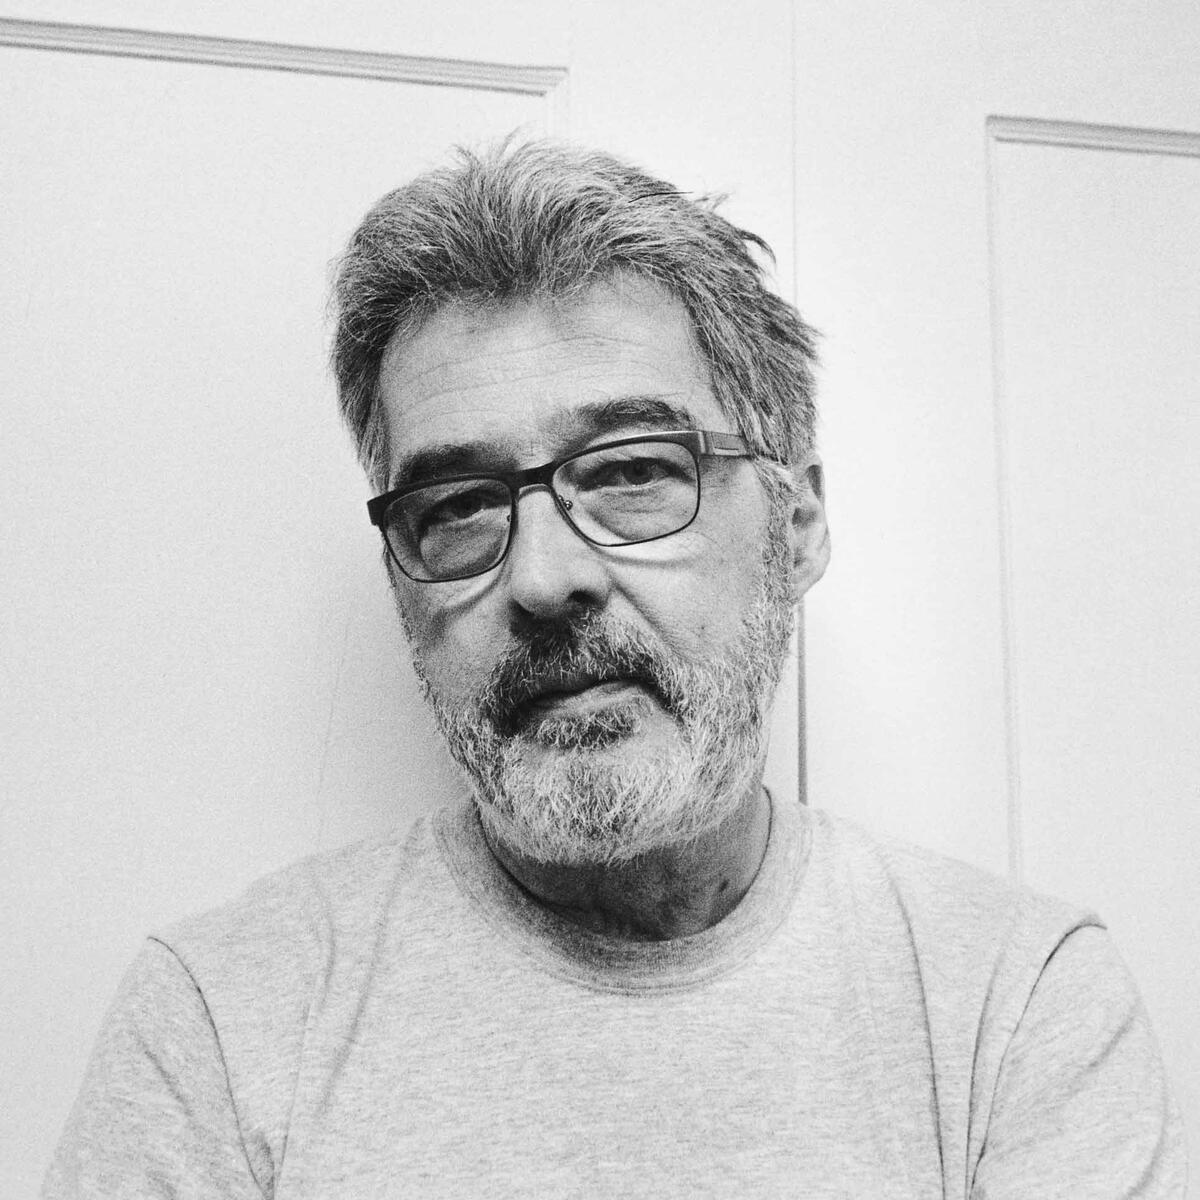 Portrait de Marc Garneau, crédit photo: Gabor Szilasi